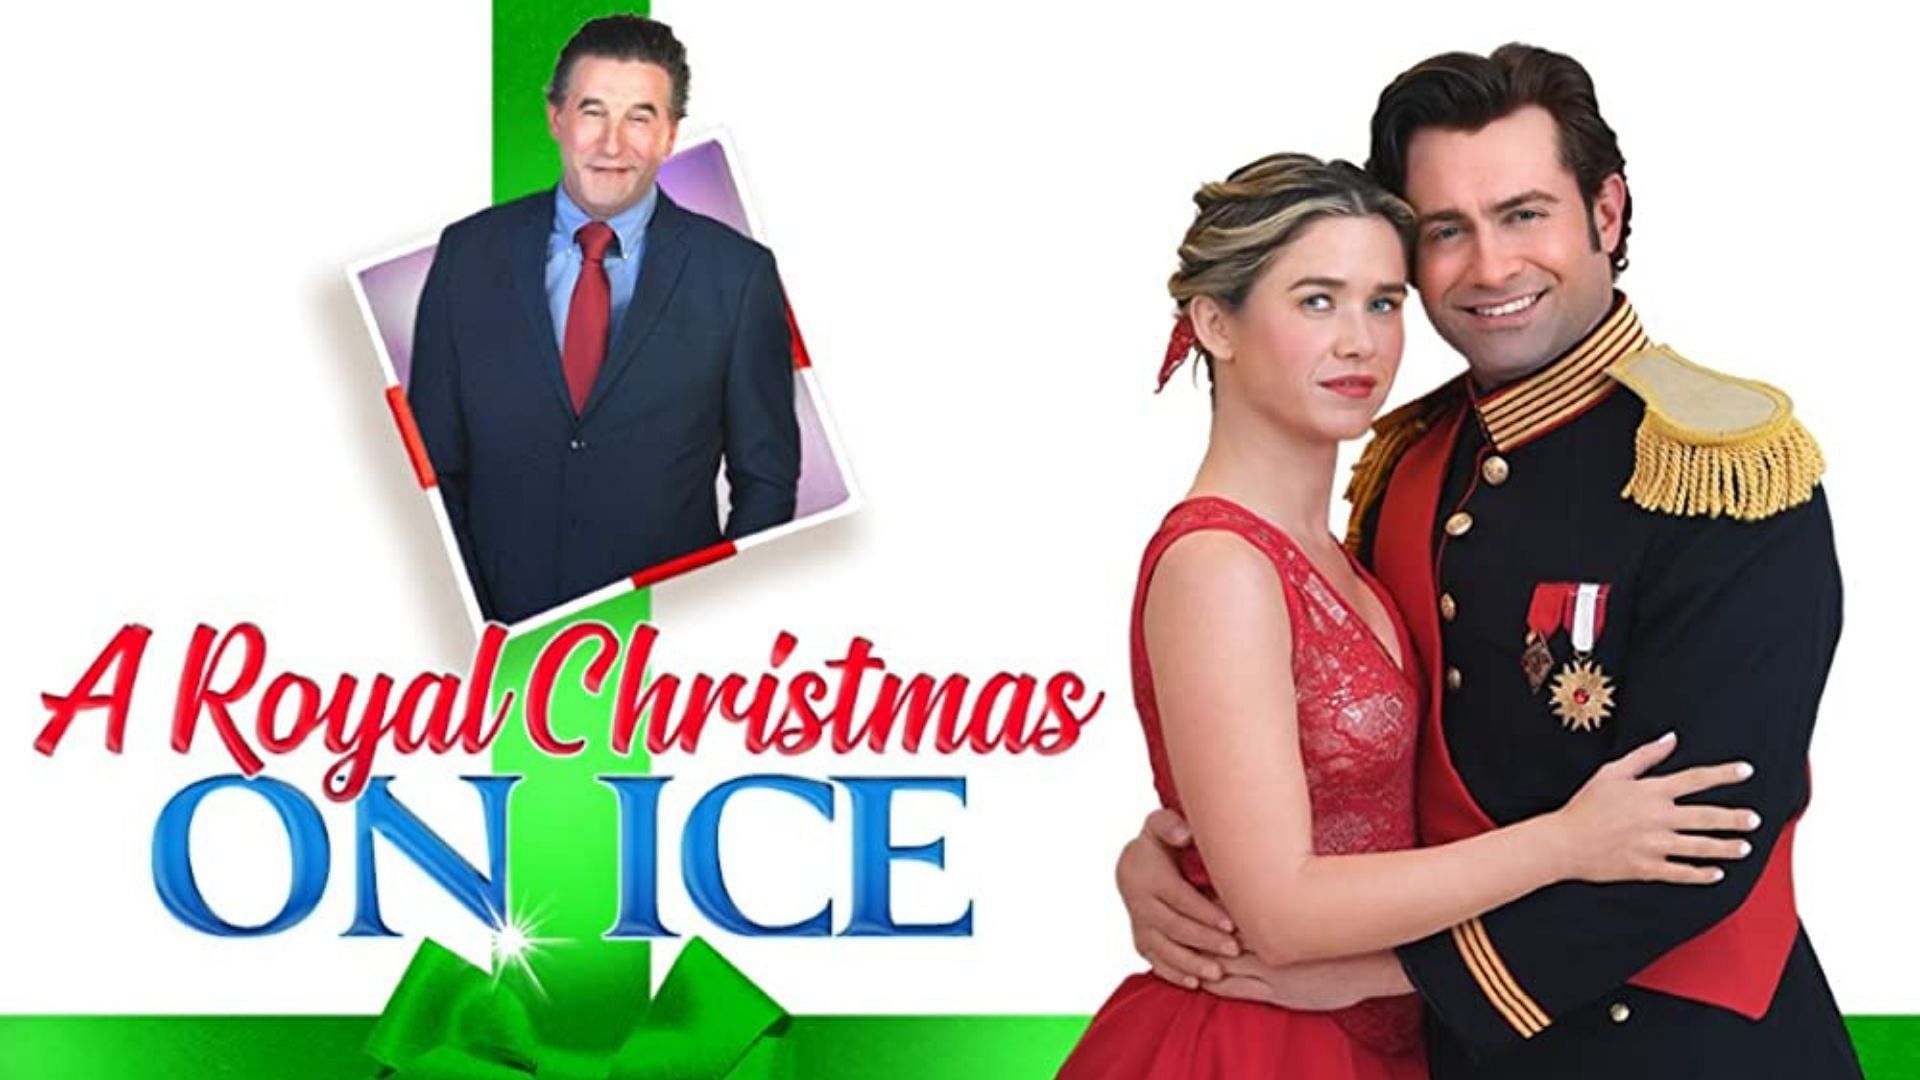 A Royal Christmas on Ice cast list Anna Marie Dobbins, Jonathan